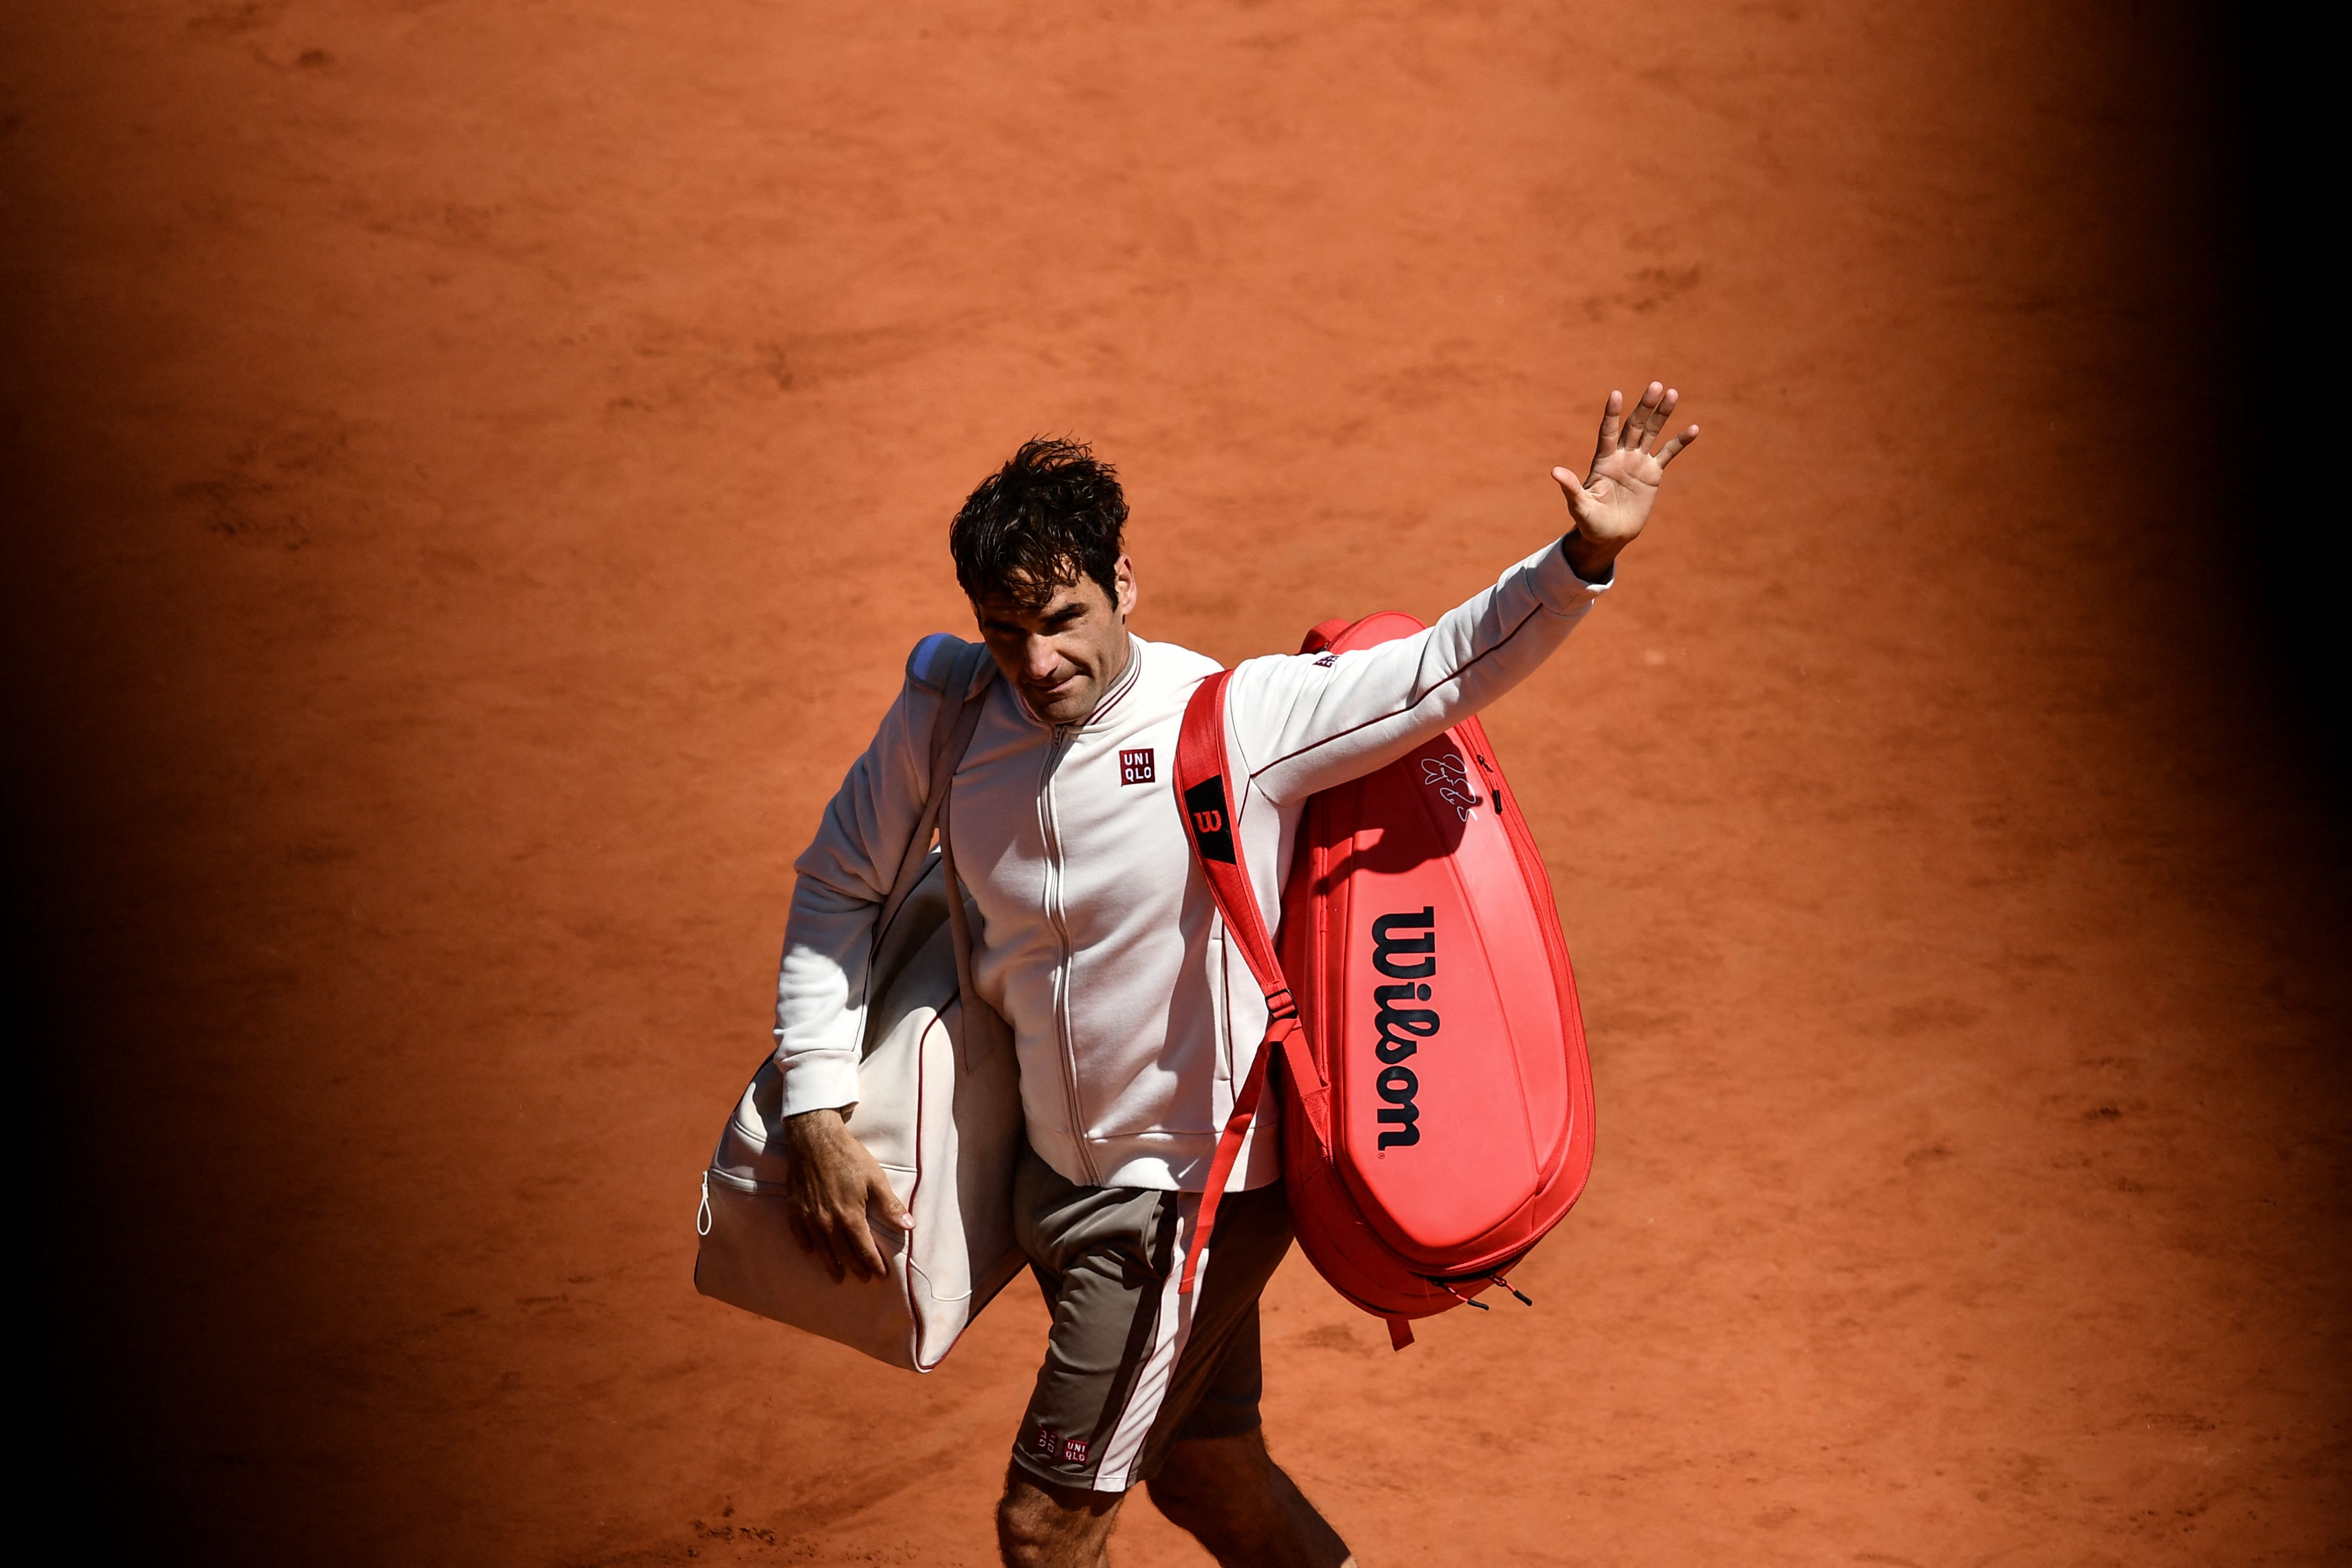 El tenista suizo Roger Federer anuncio su retiro de tenis profesional y asegura que seguirá jugando, pero ya no en Grand Slam. (Foto Prensa Libre: AFP).